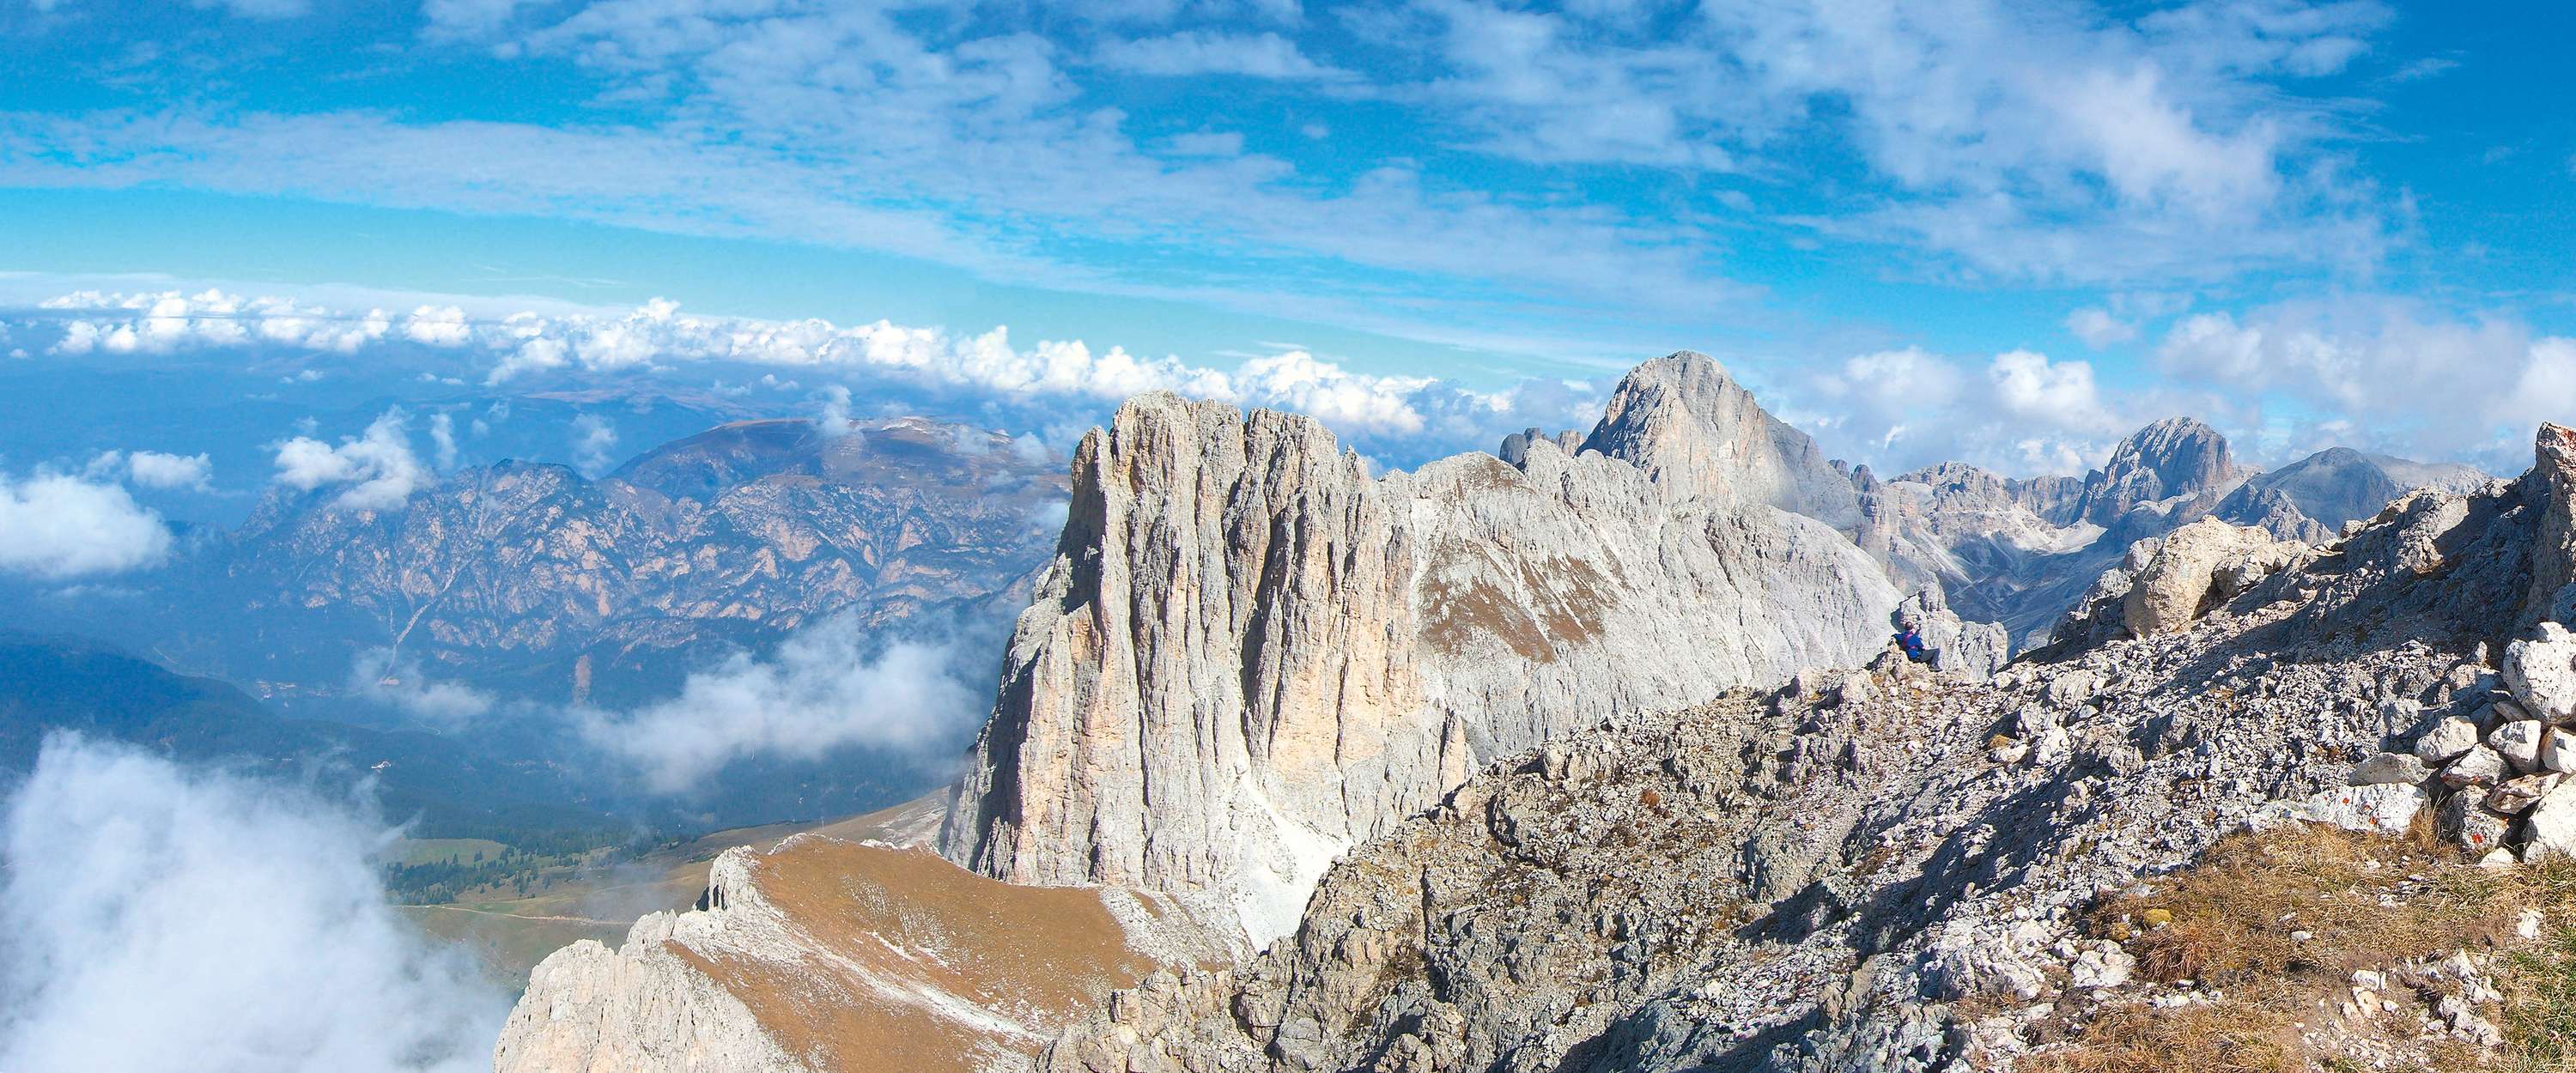             Picco di montagna - Carta da parati con panorama montano e coperta di lana
        